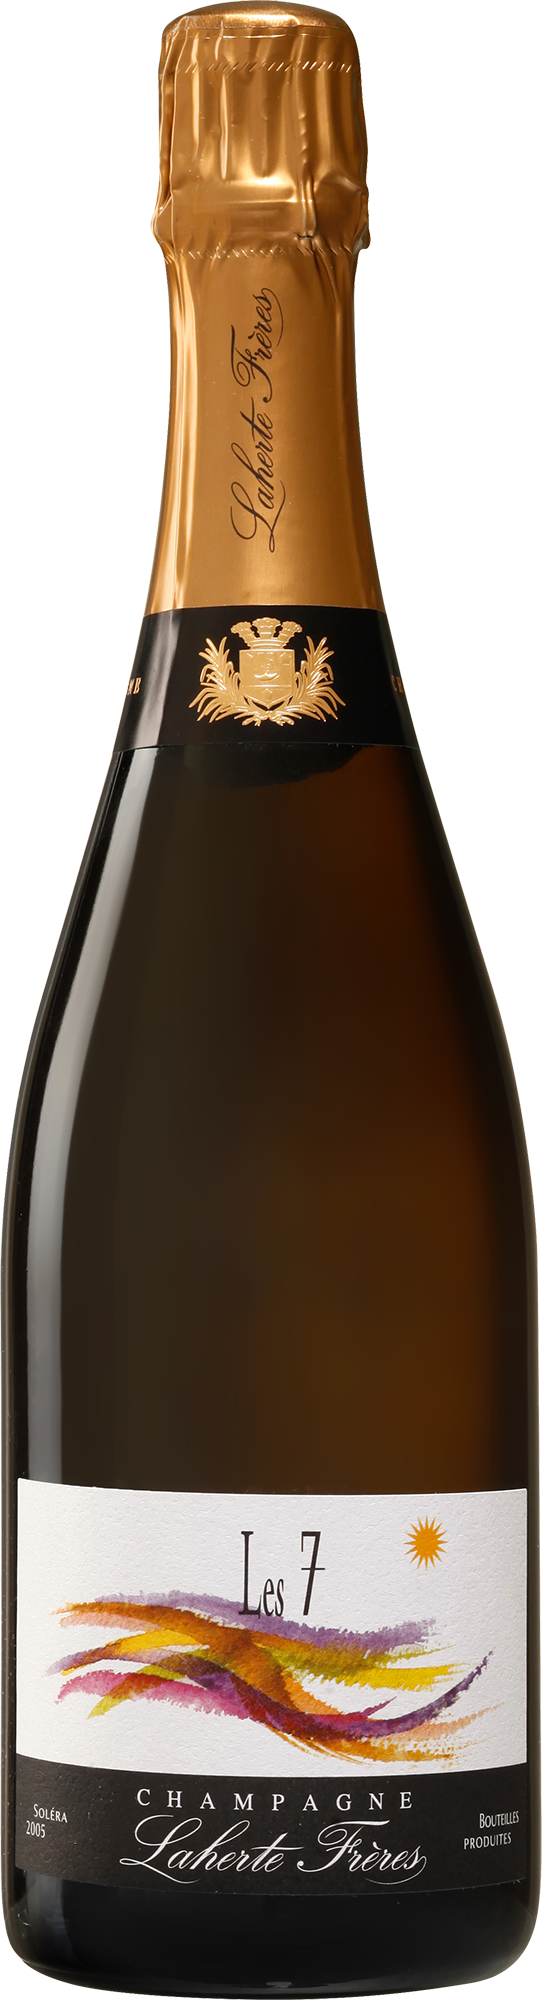 Champagne Laherte Frères Les 7 (Solera 05-18. Disg. Dec 2021)